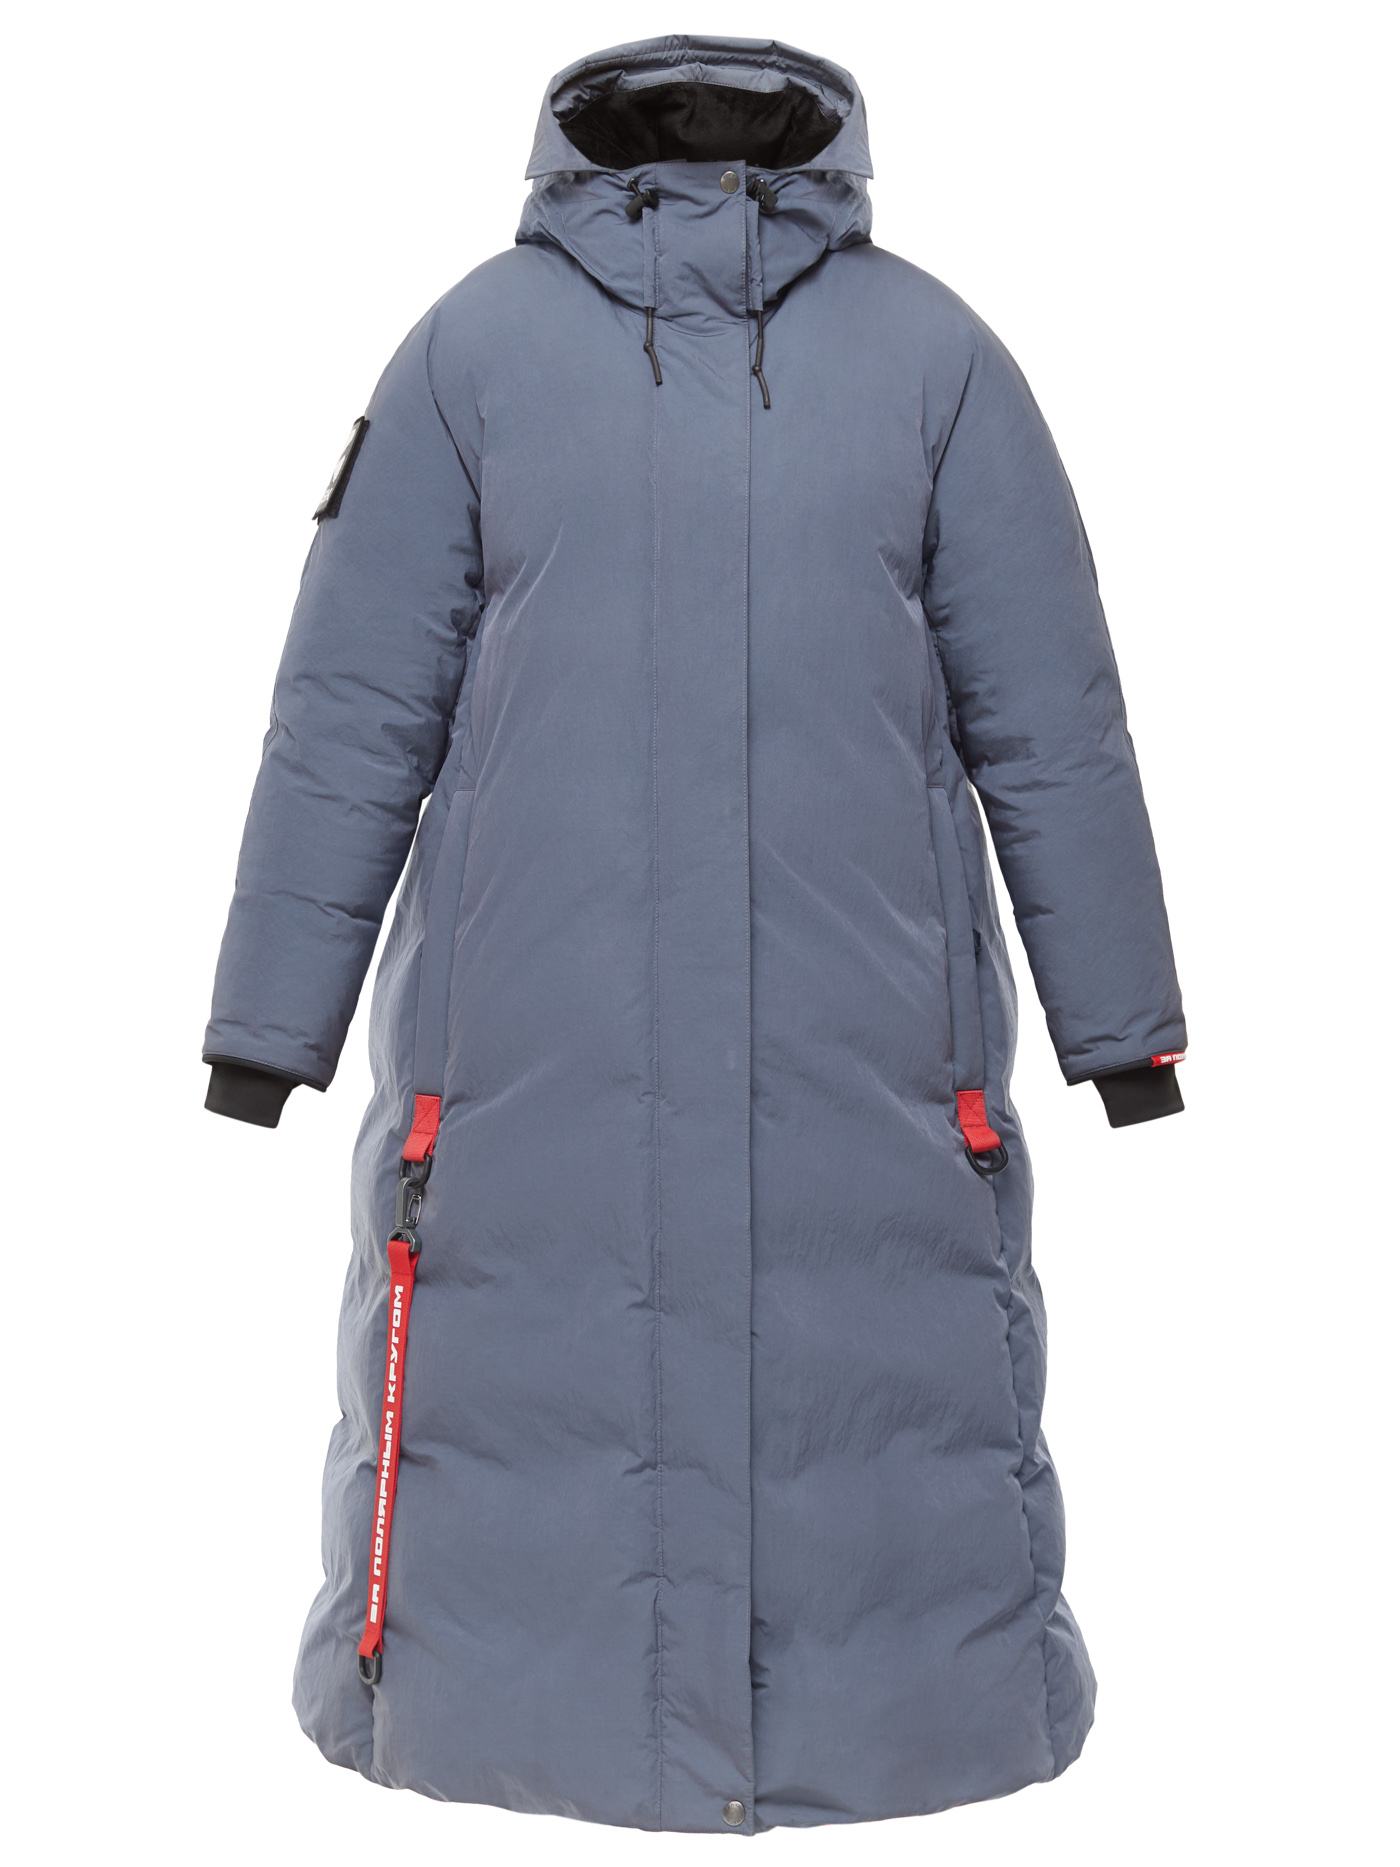 Пуховое пальто BASK, размер 46, цвет маренго 19H51-9675-046 YANA - фото 12